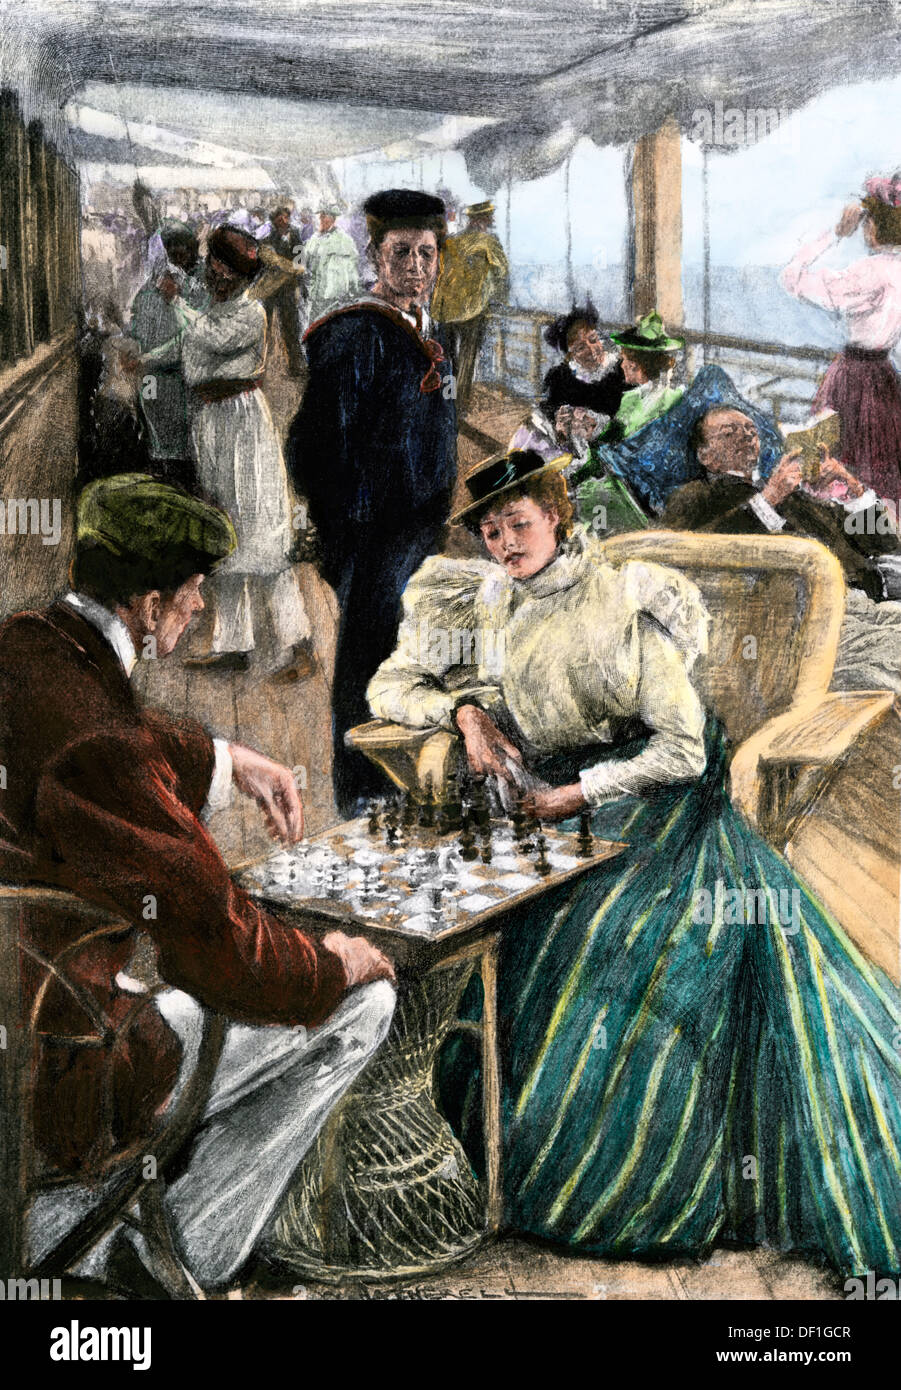 Los pasajeros de recreación de la tarde sobre la cubierta de un barco de vapor P & O circa 1900. Xilografía coloreada a mano Foto de stock